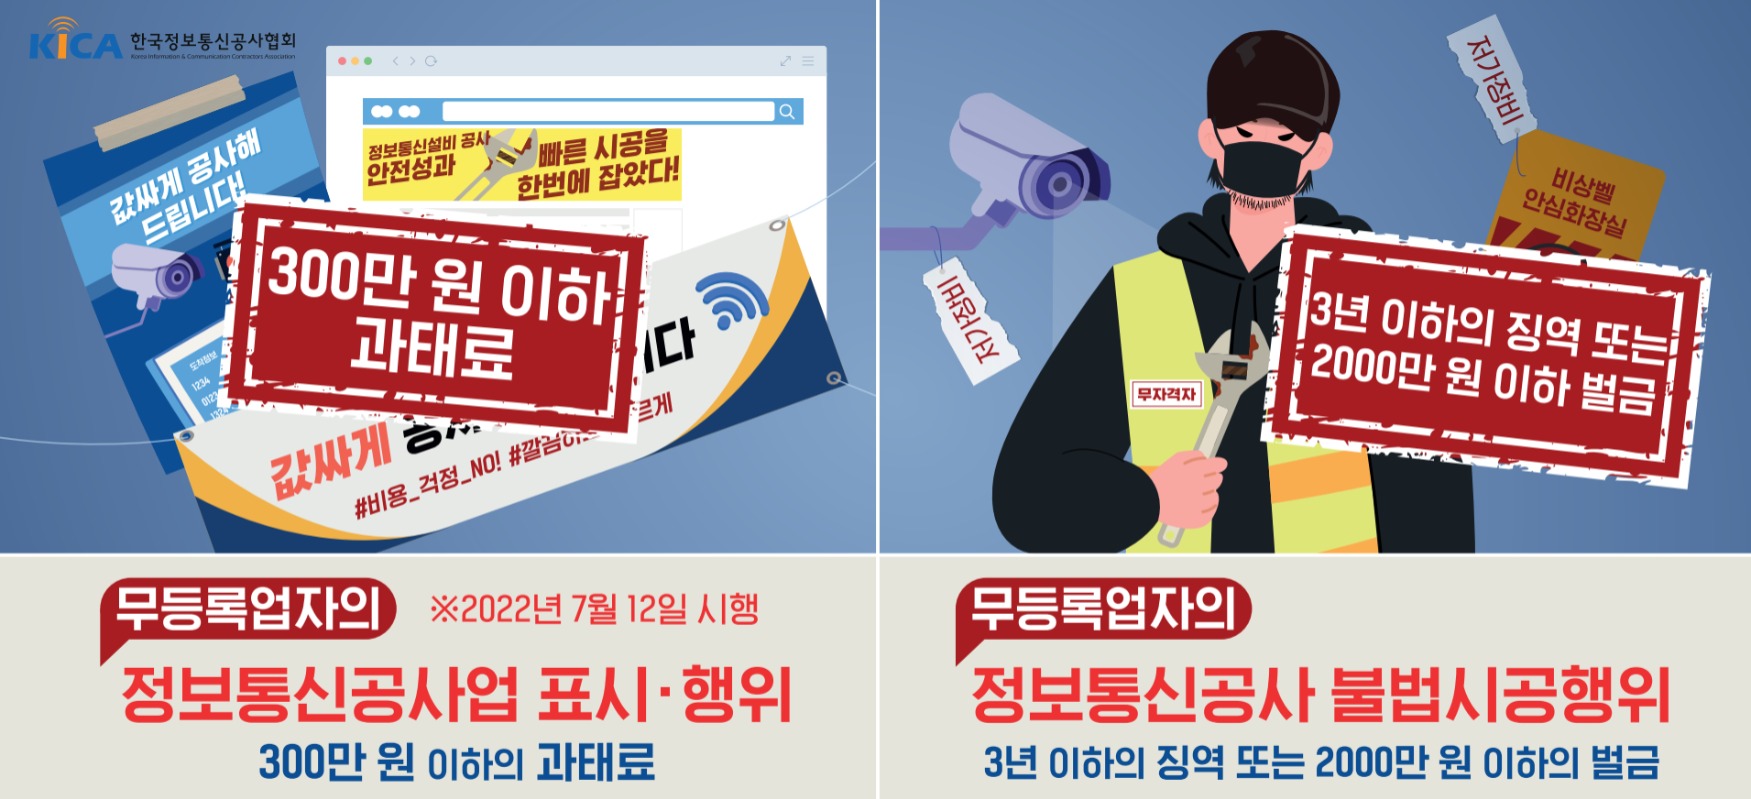 한국정보통신공사협회 신문광고